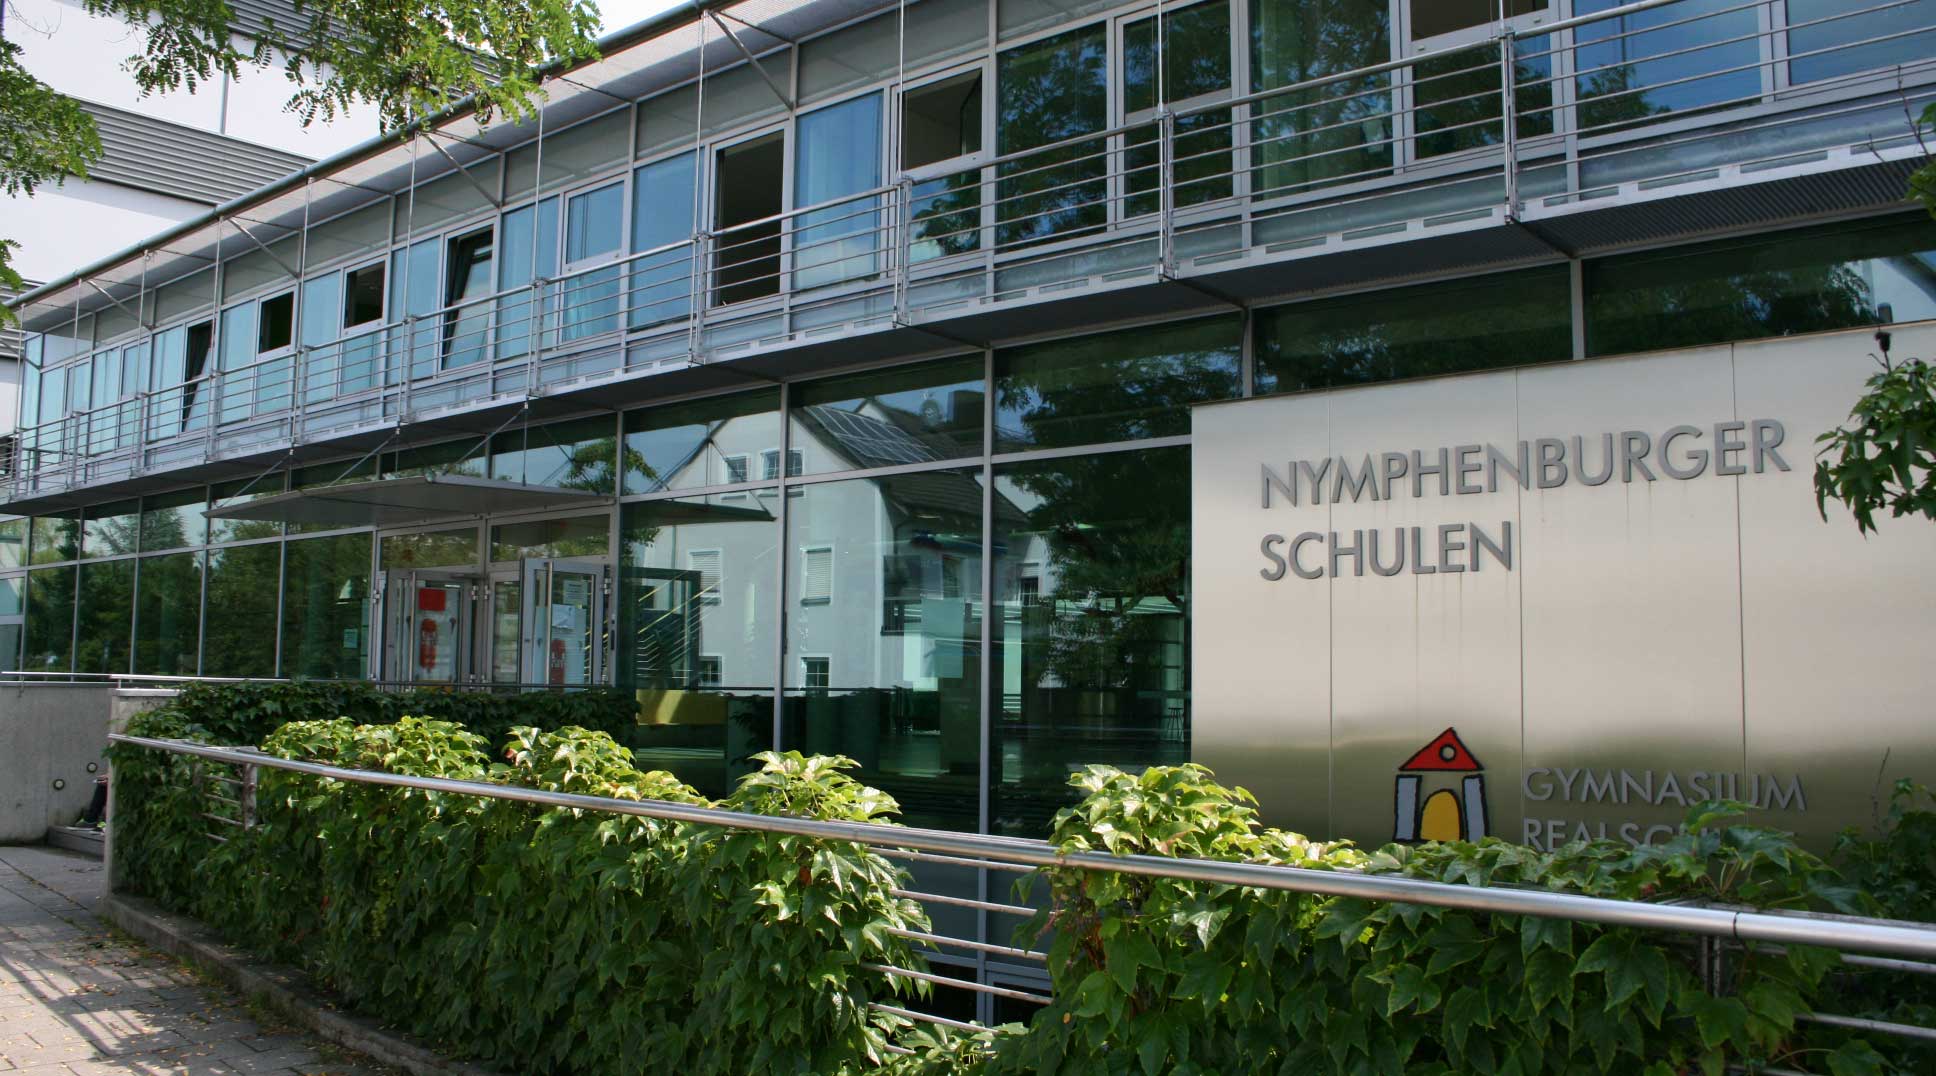 Nymphenburger Schulen München